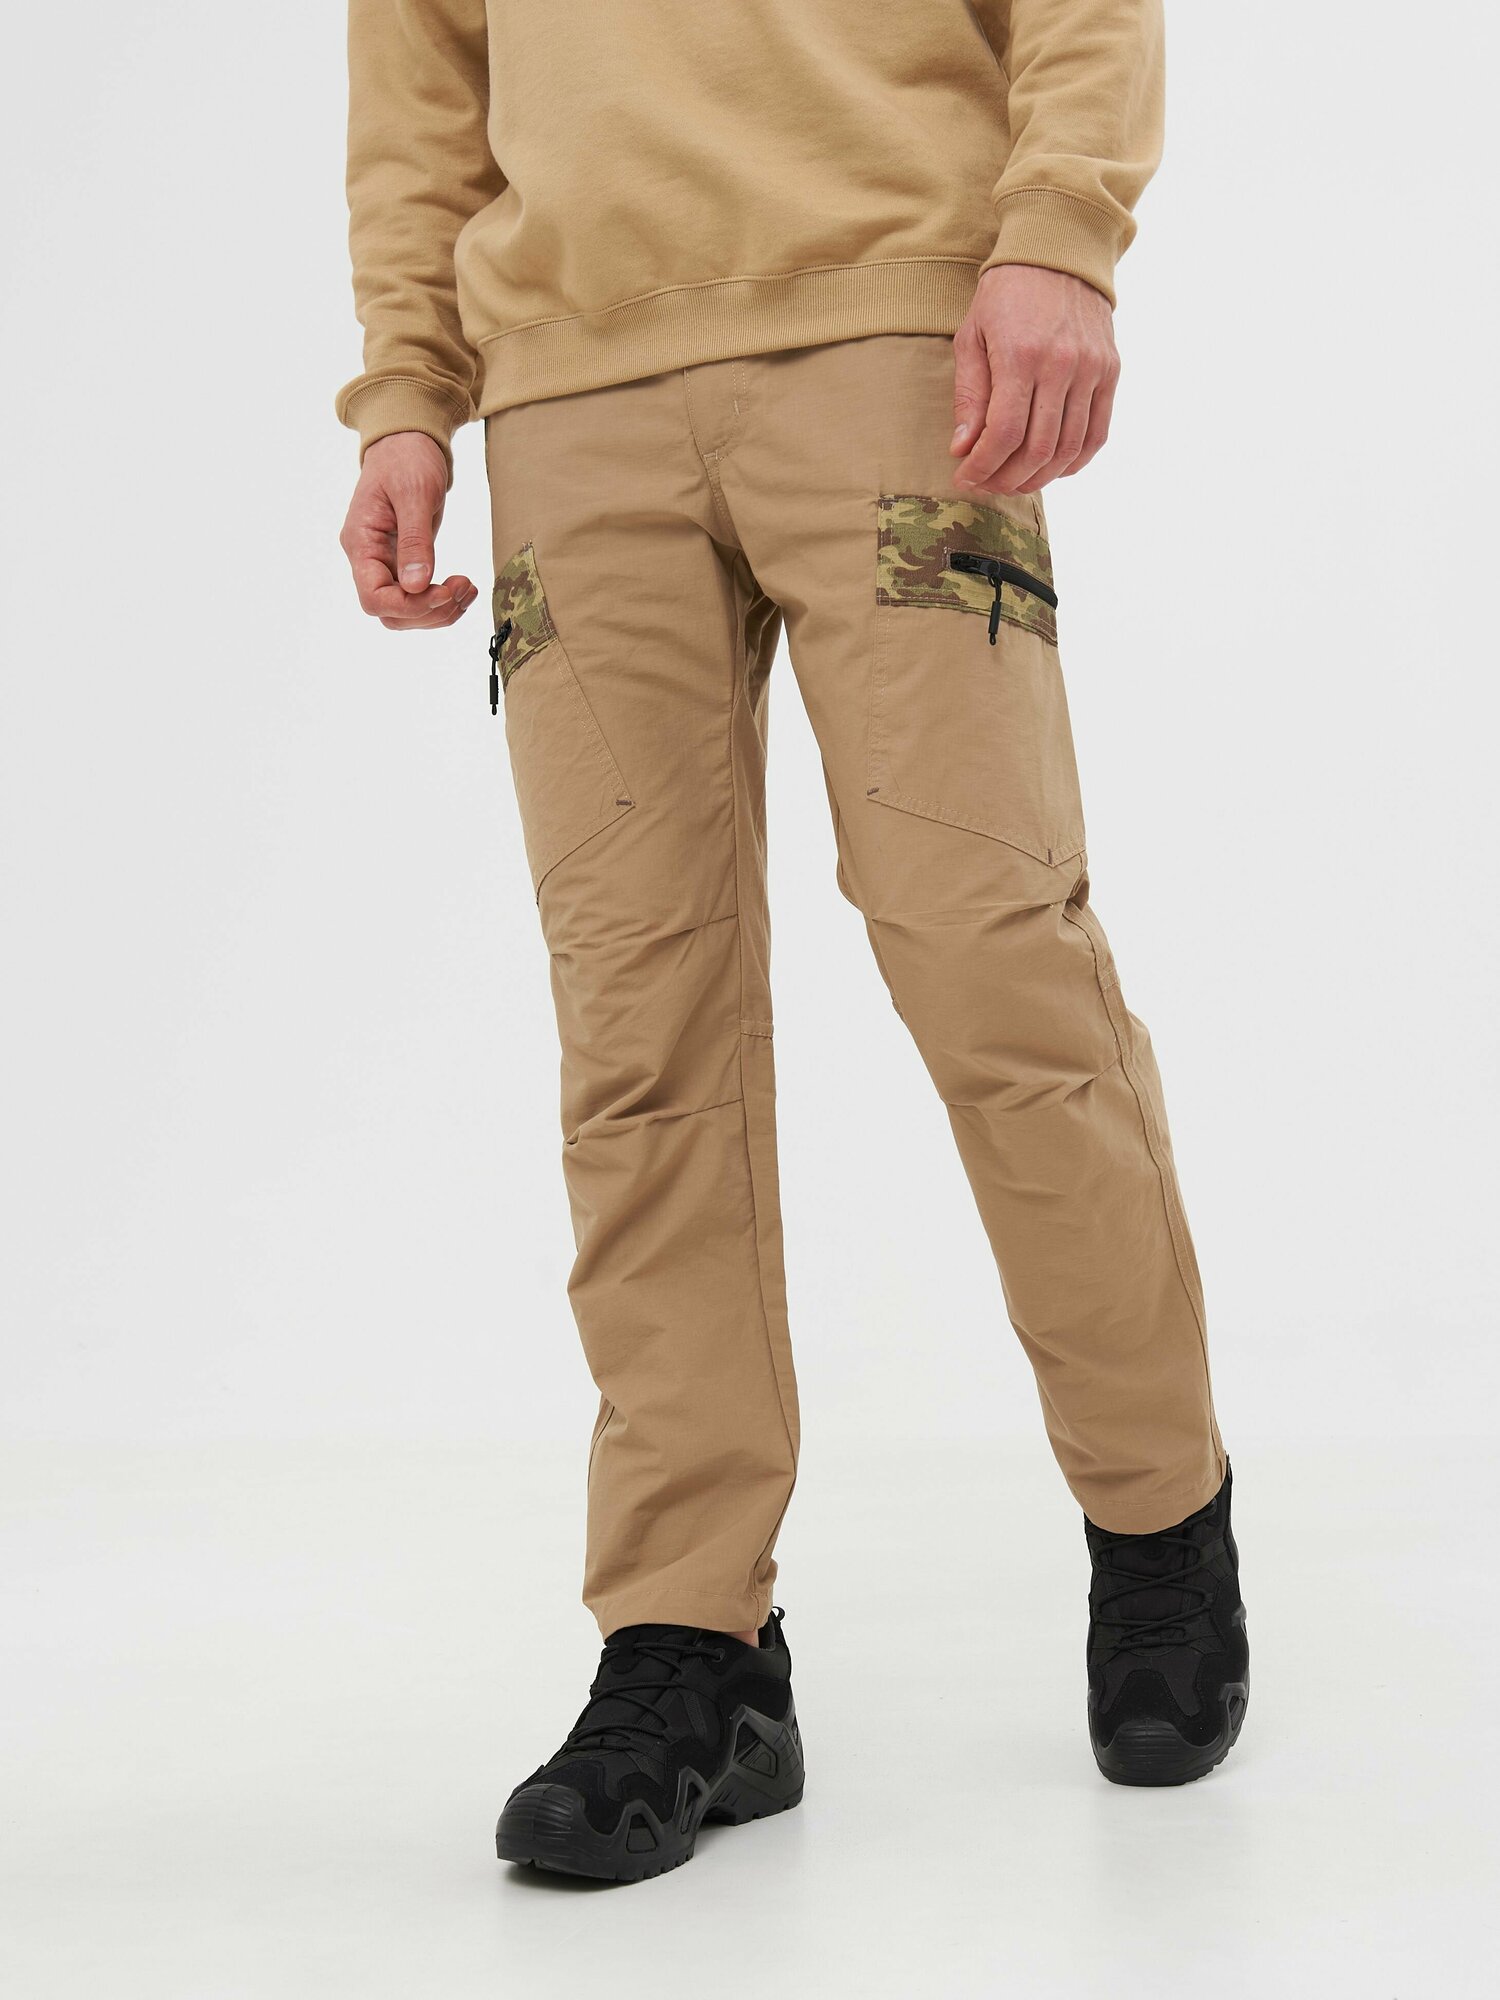 Тактические брюки мужские Huntsman Матрица летние с карманами рыбацкие, походные, для охоты, ткань Nylon Cotton рипстоп, цвет песок (р.60-62/182-188)